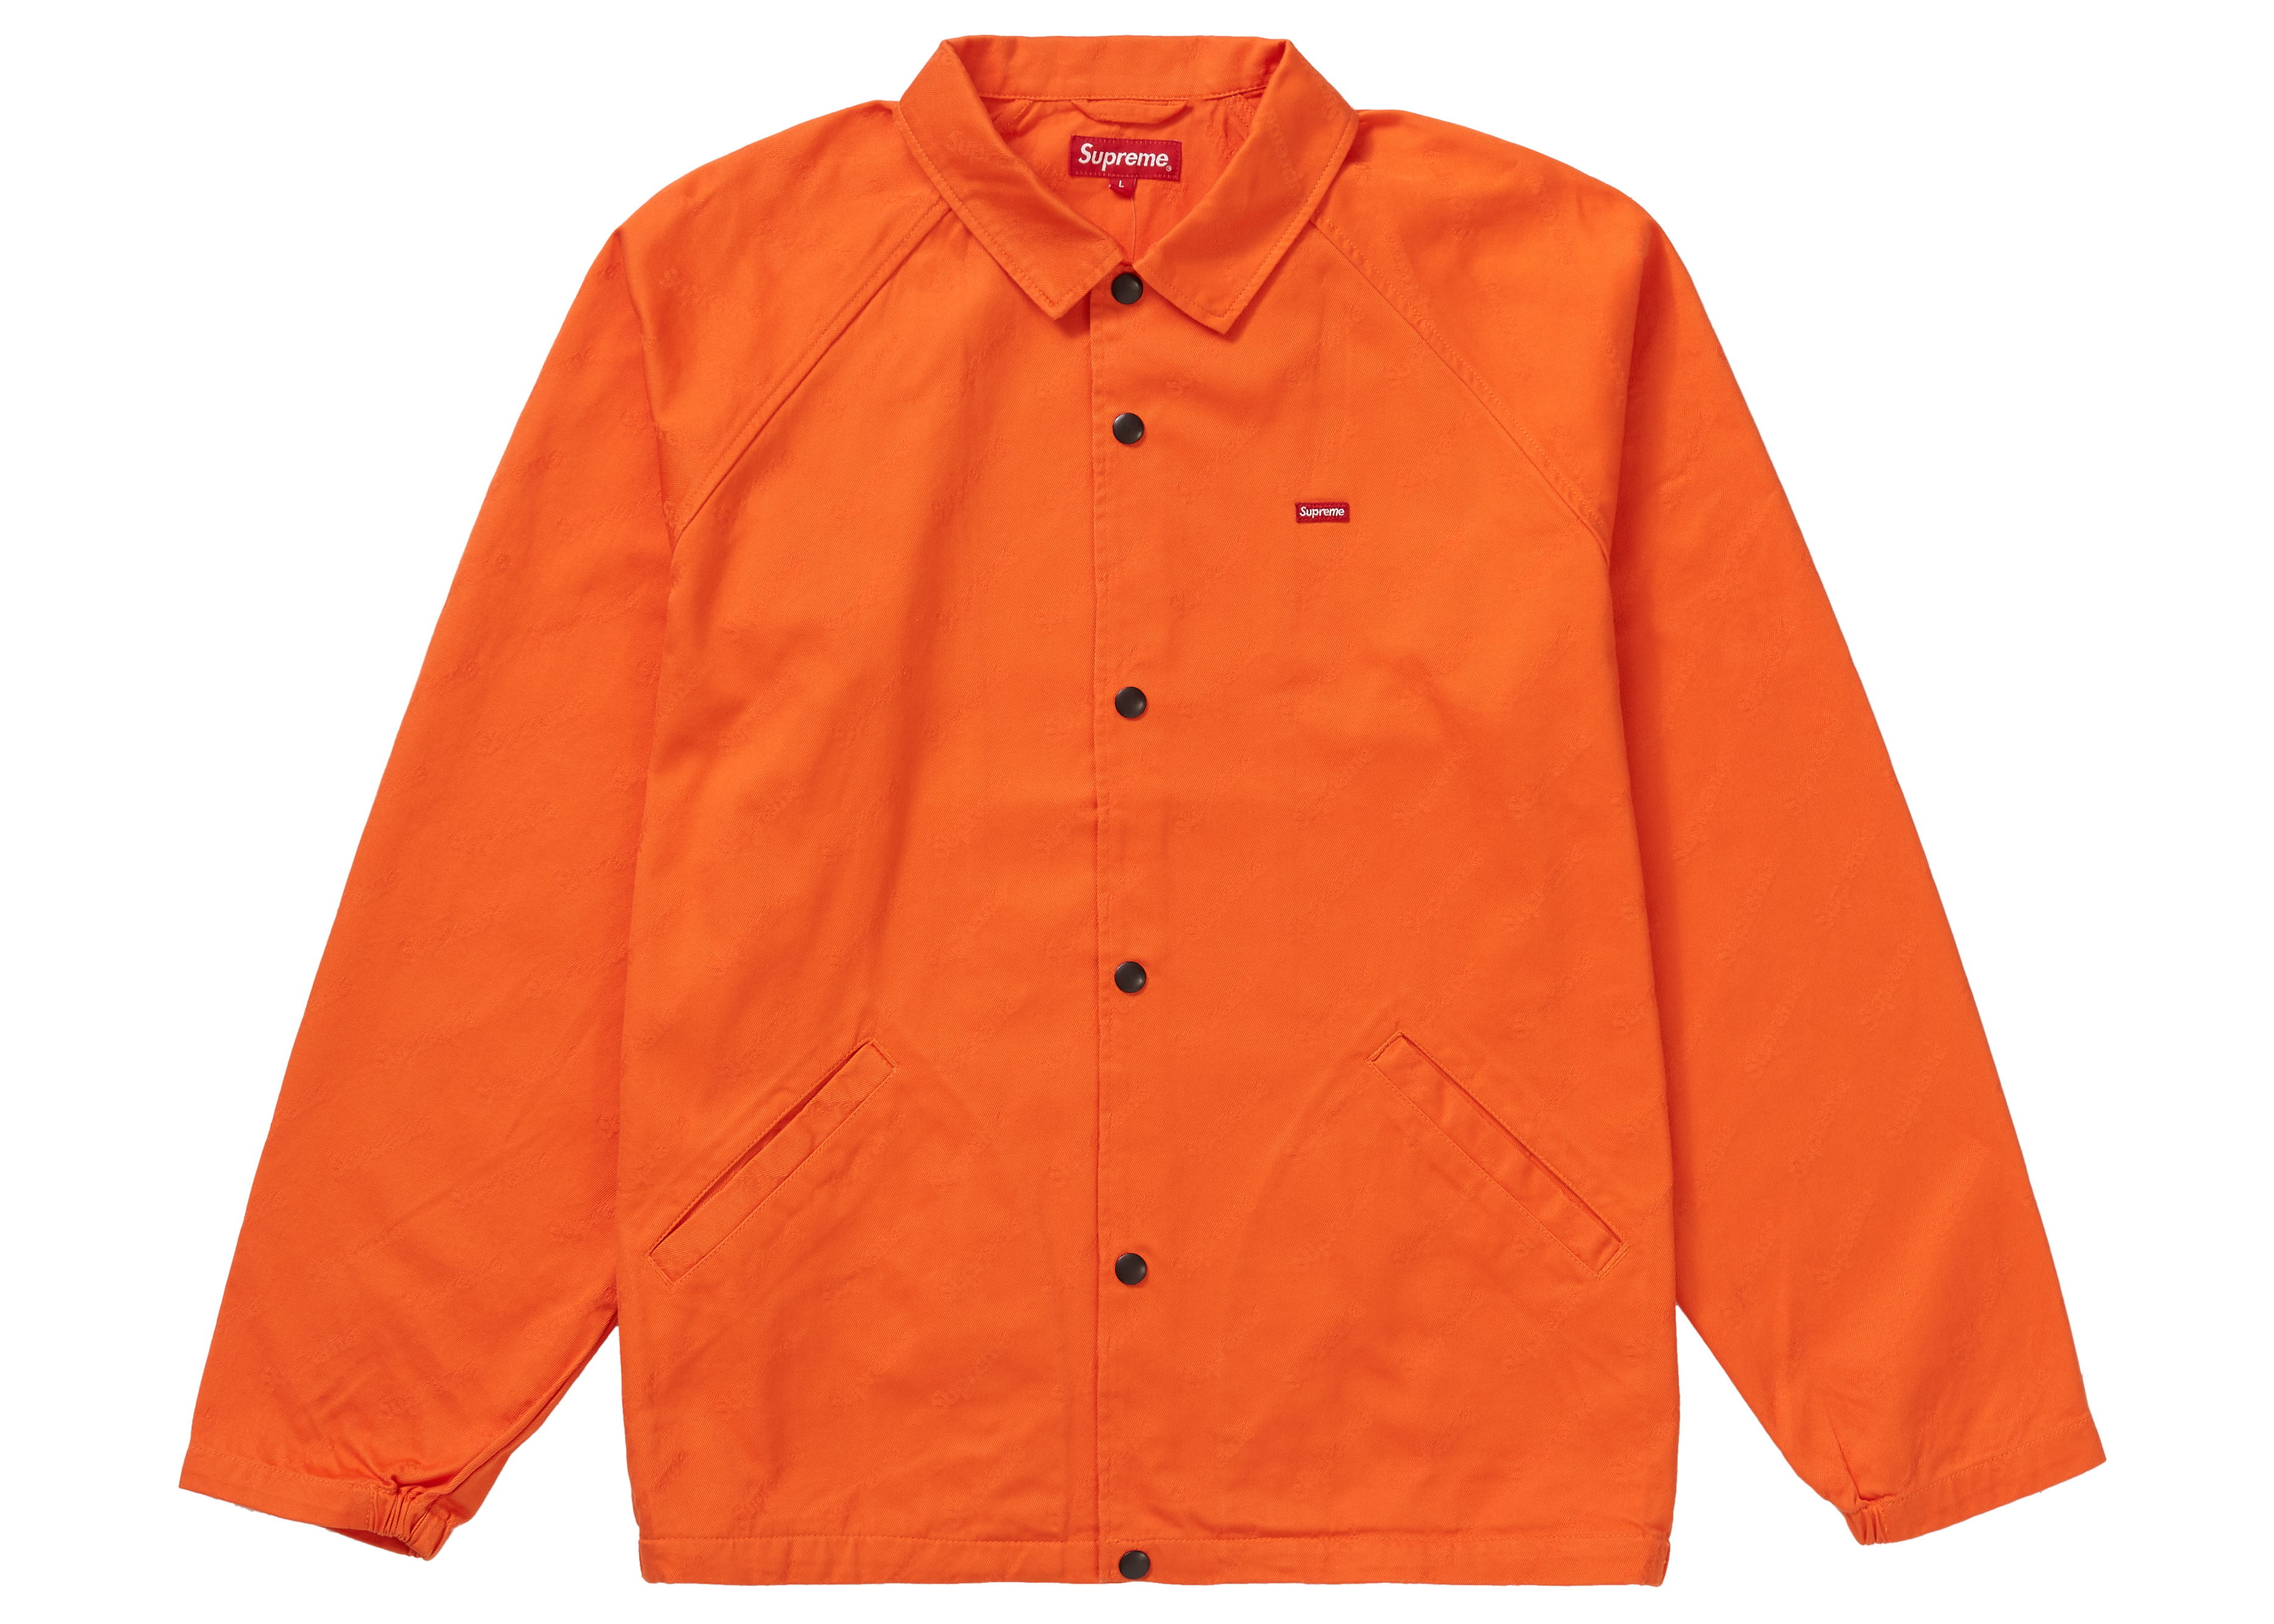 Supreme Snap Front Jacquard Logos Twill Jacket Orange Men's - FW19